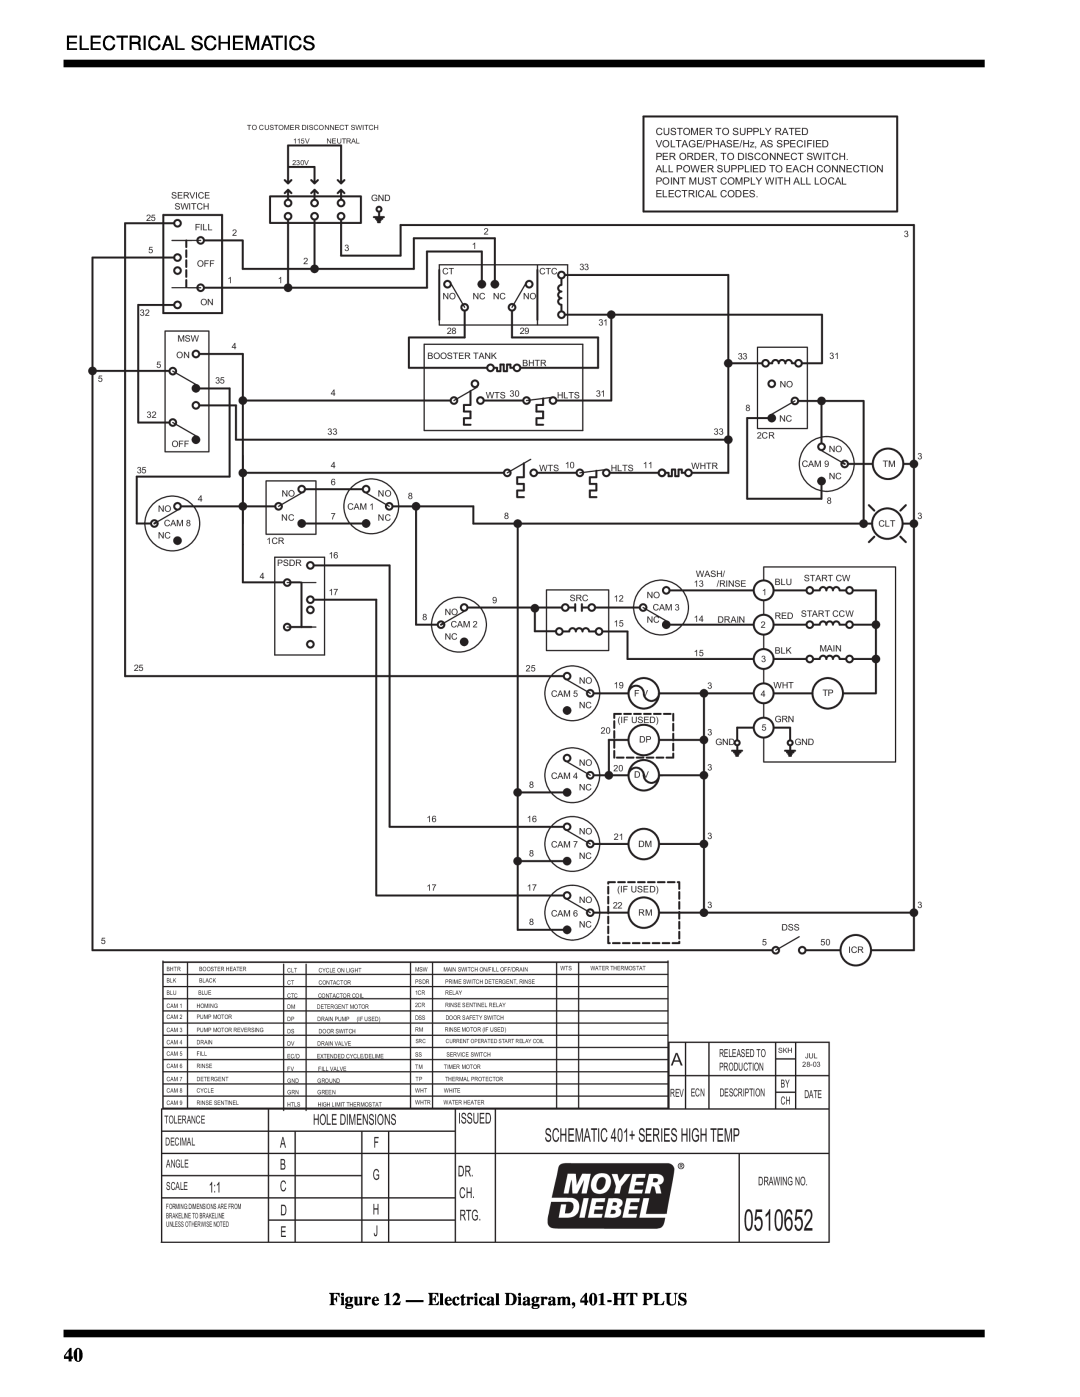 Moyer Diebel 401-LTM2 PLUS, 401-HTNM2 PLUS, 401-HTM2 PLUS Electrical Schematics, 0510652, Electrical Diagram, 401-HT PLUS 